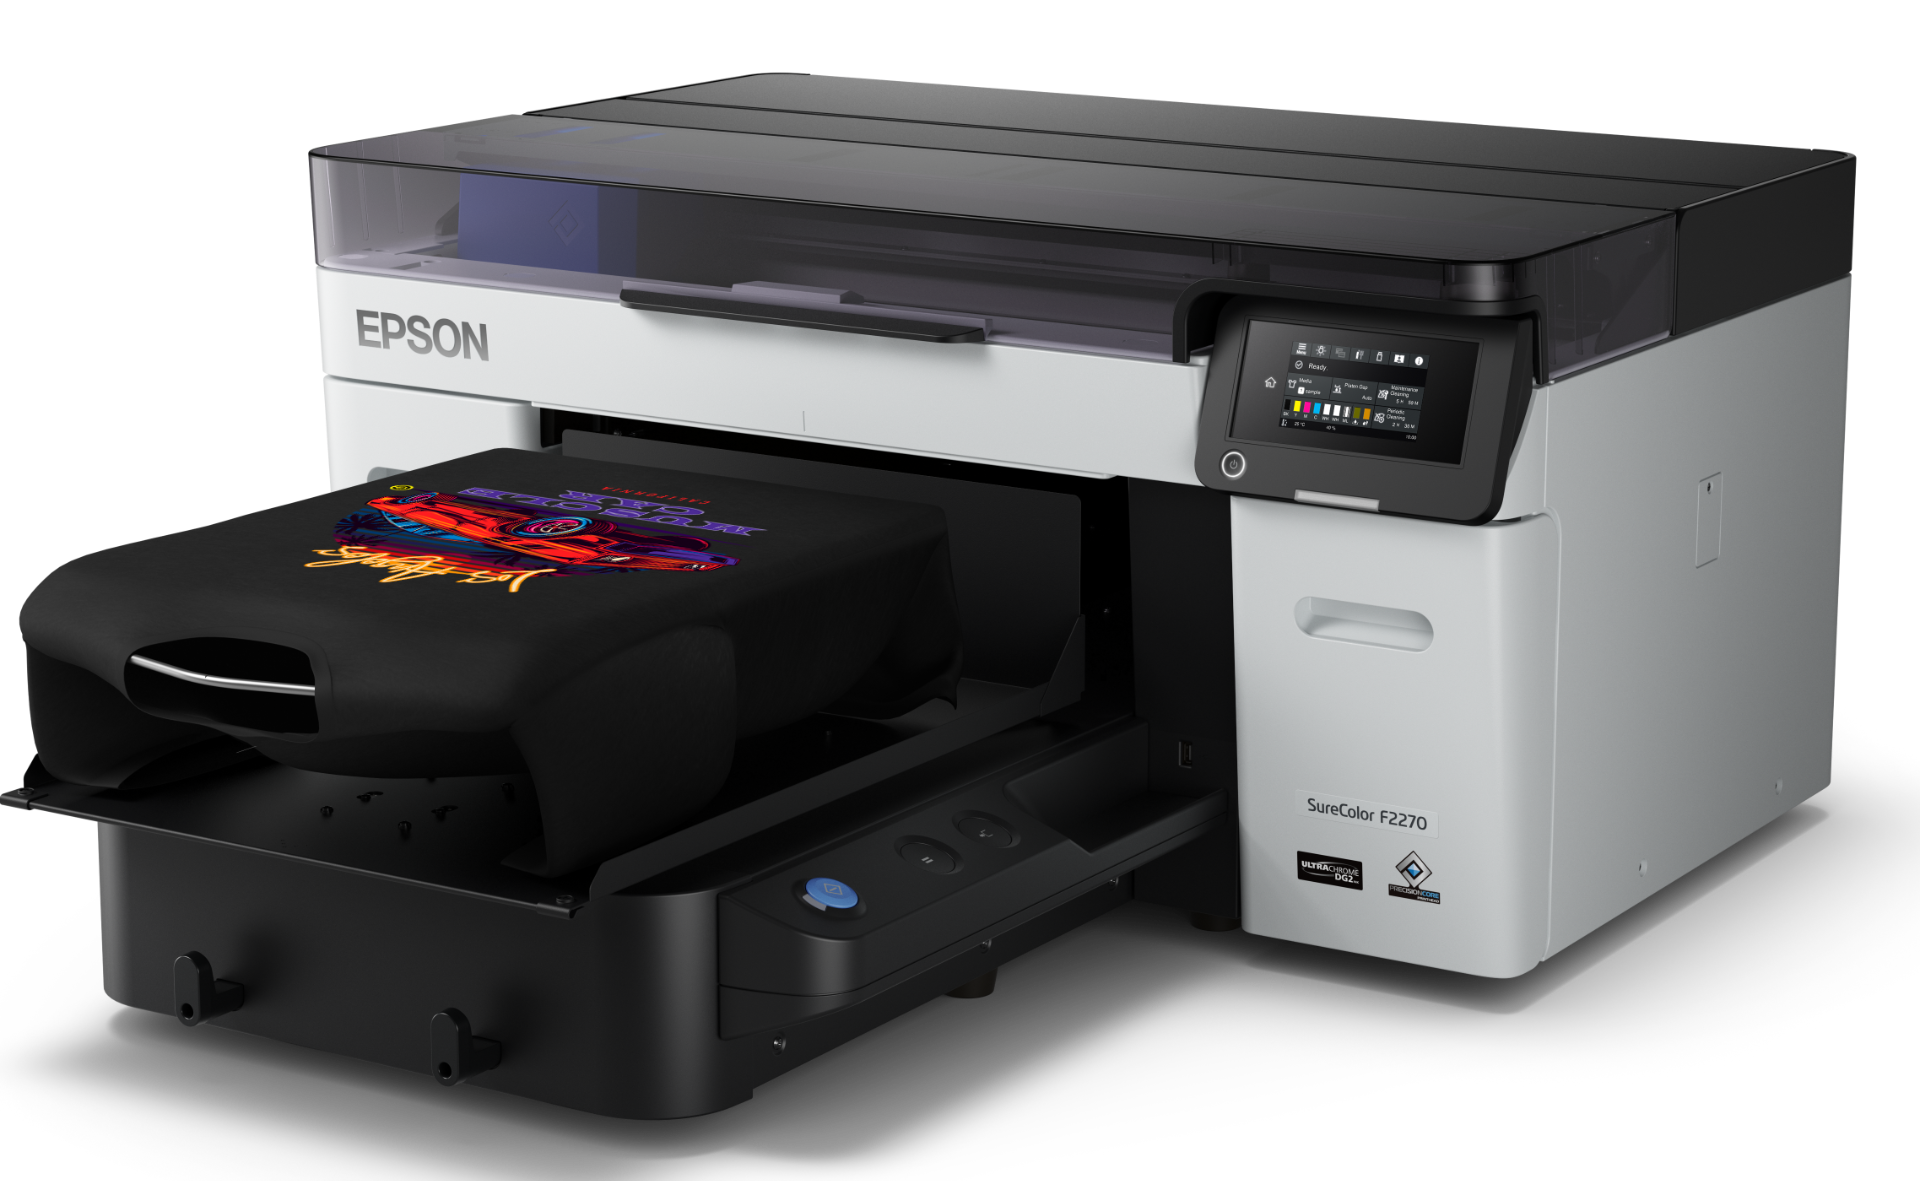 Epson SCF2270 DTF Printer 